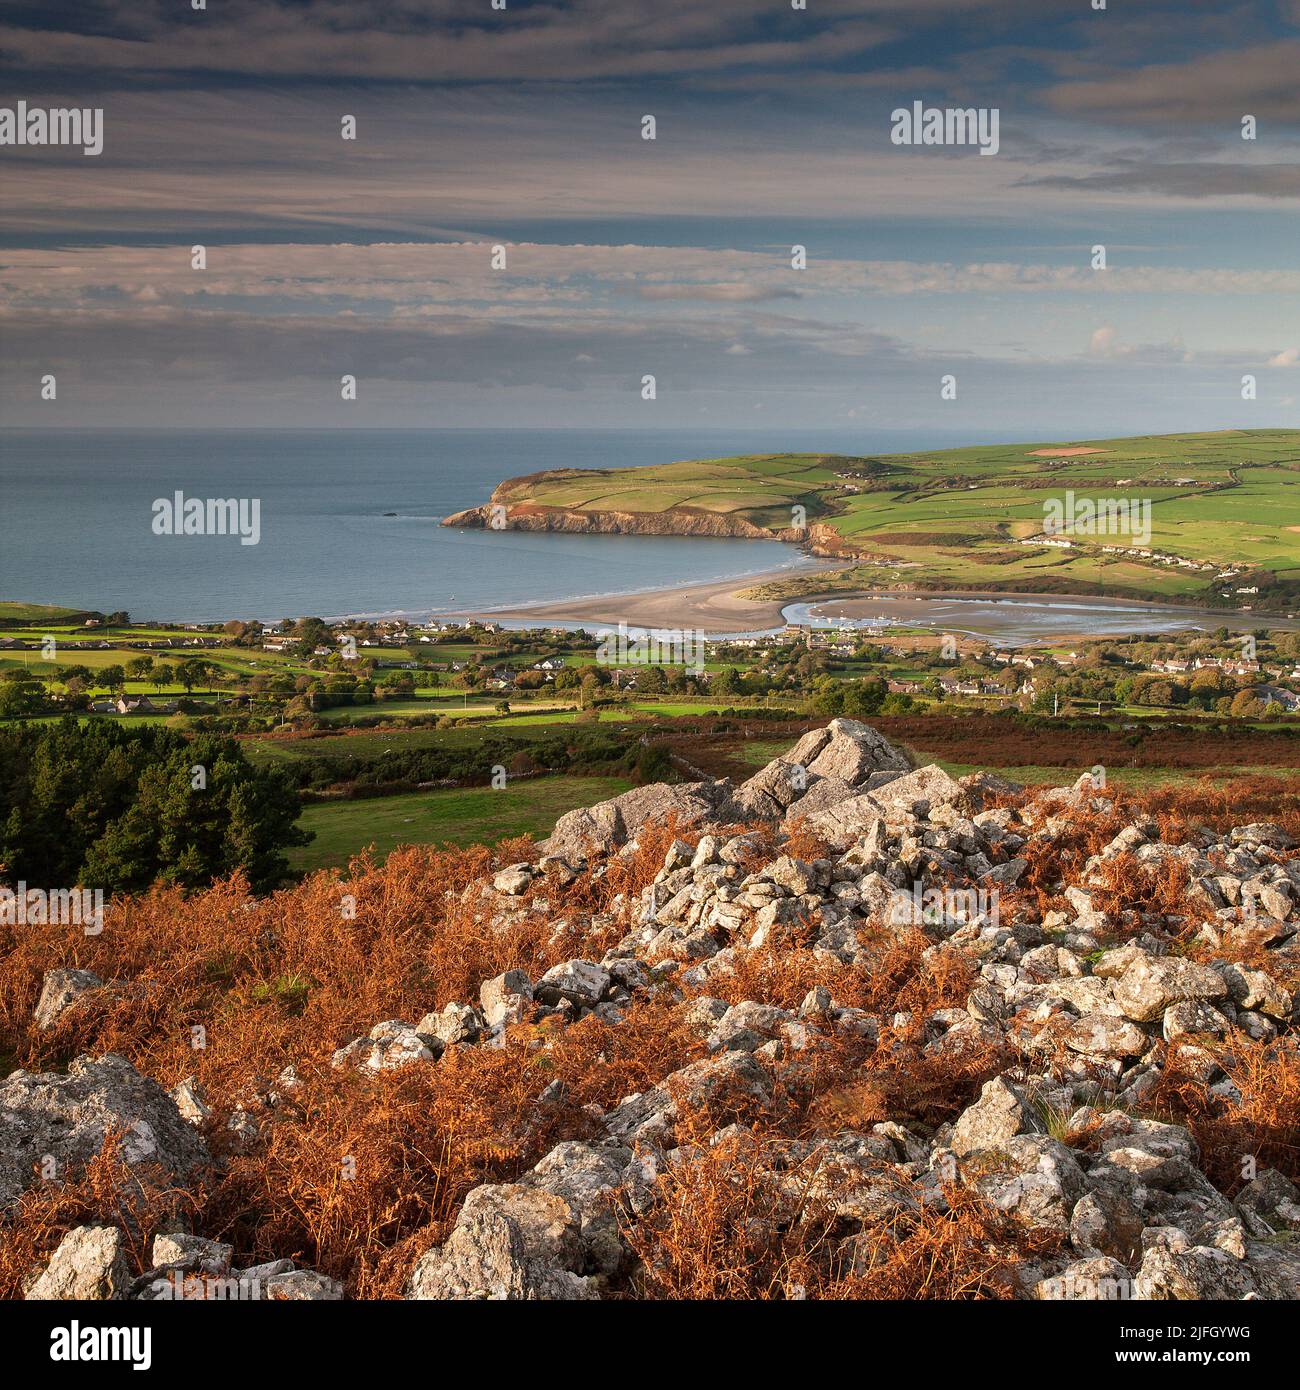 The Nevern Estuary, Pembrokeshire, Wales, UK Stock Photo